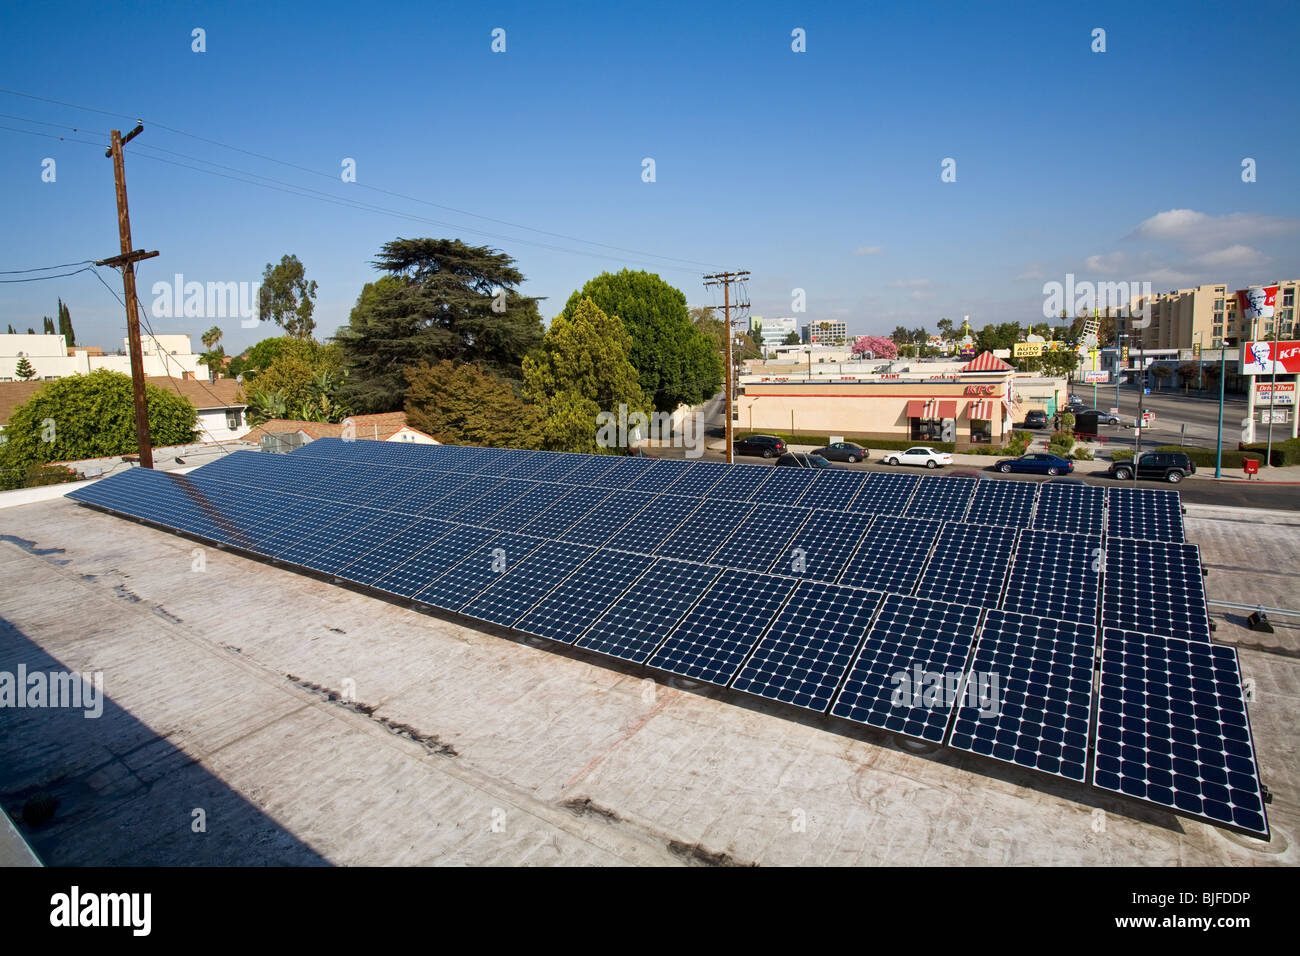 Array solare sul tetto della Firestone Store, North Hollywood Los Angeles, California, Stati Uniti d'America Foto Stock